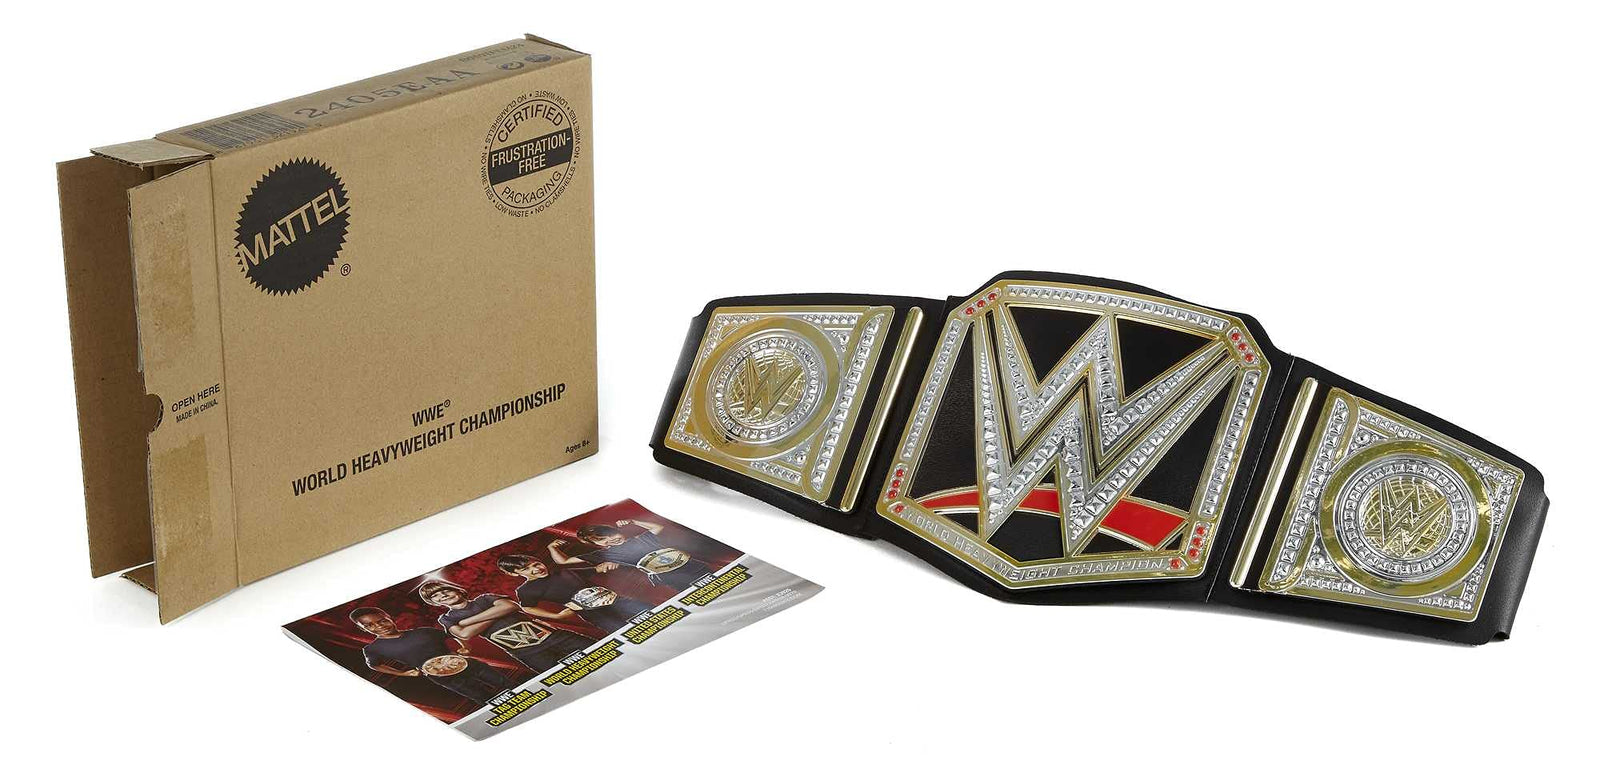 WWE Championship Belt [Amazon Exclusive]